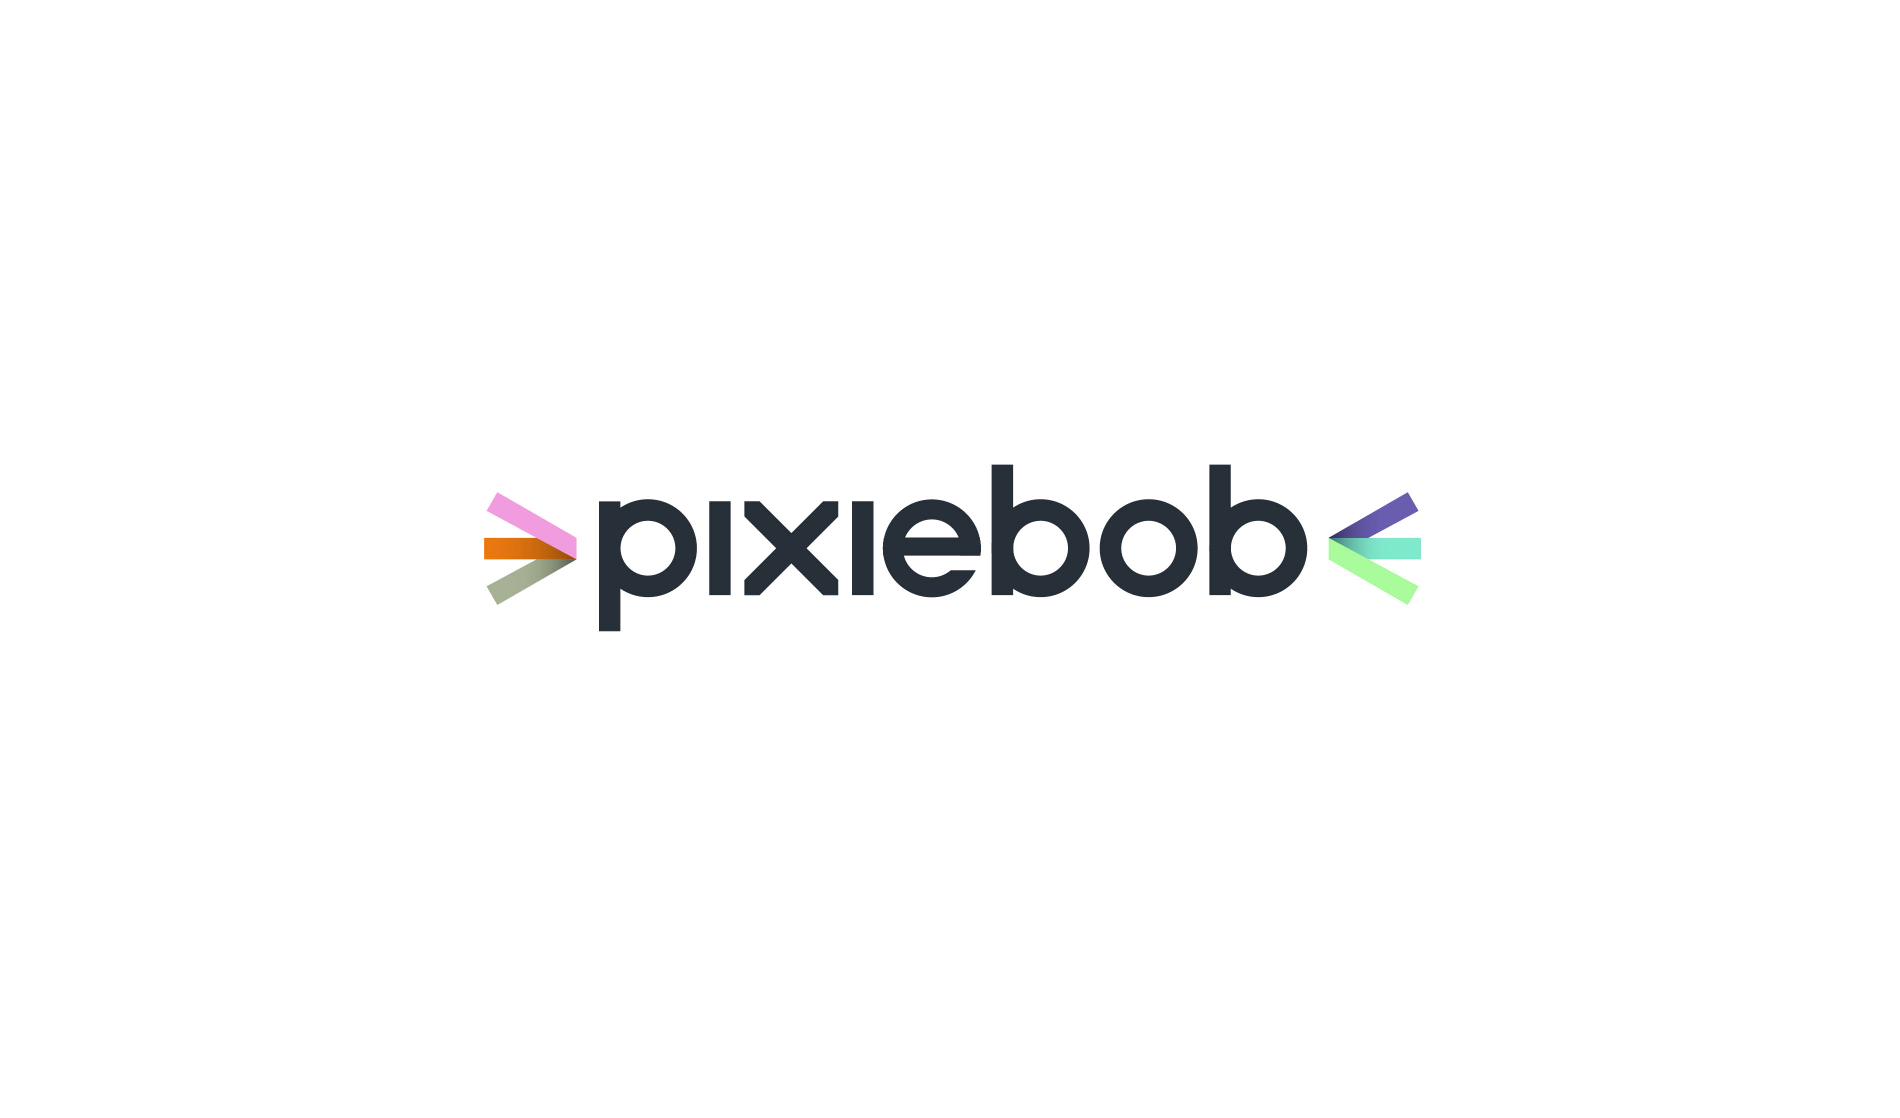 Pixiebob